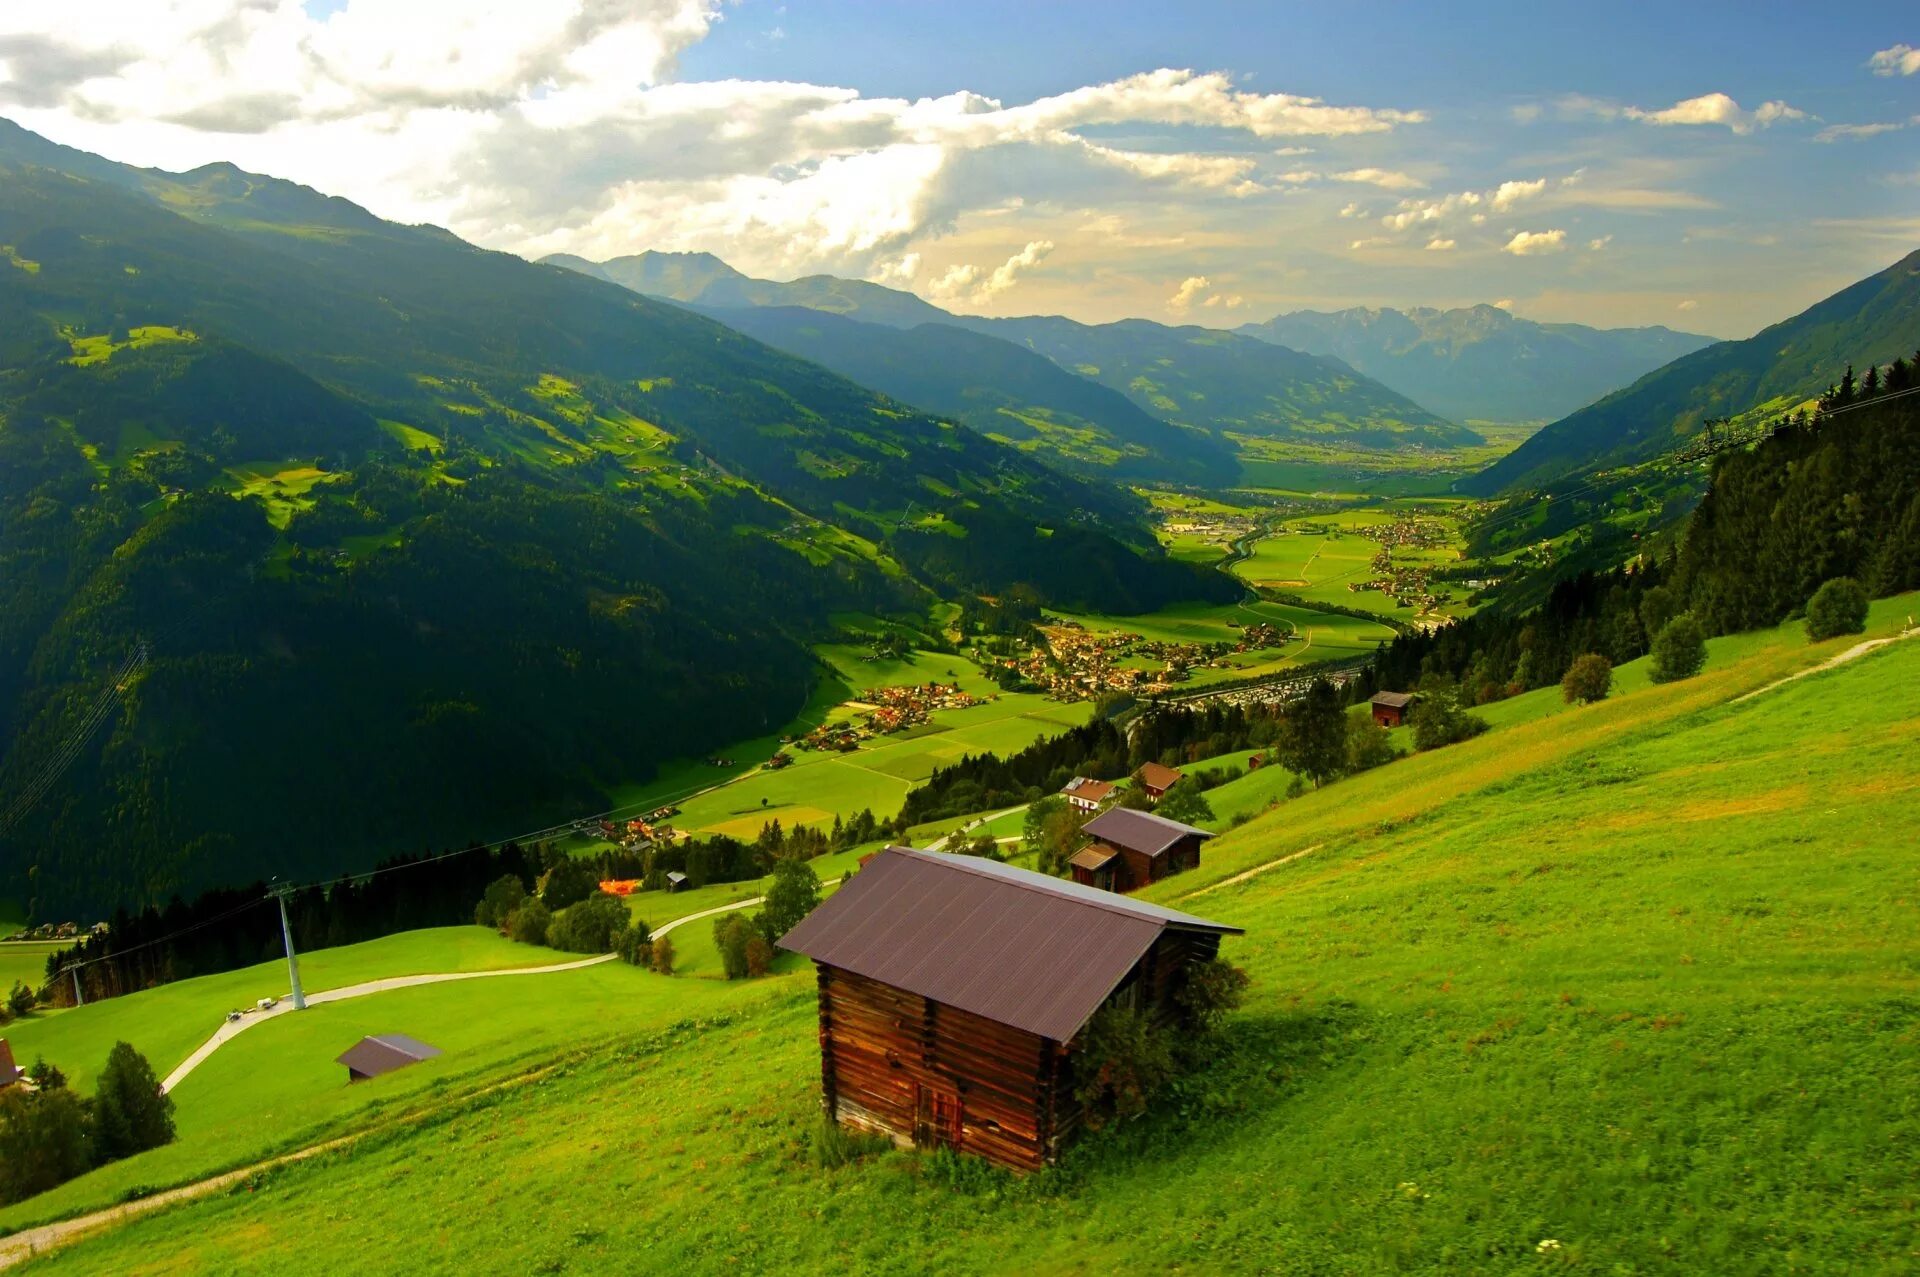 Долина Лаутербруннен Швейцария. Долина Меюсе Бельгия. Грузия деревня в горах. Зеленые холмы Швейцарии. Везде работа на горах в долинах рощах